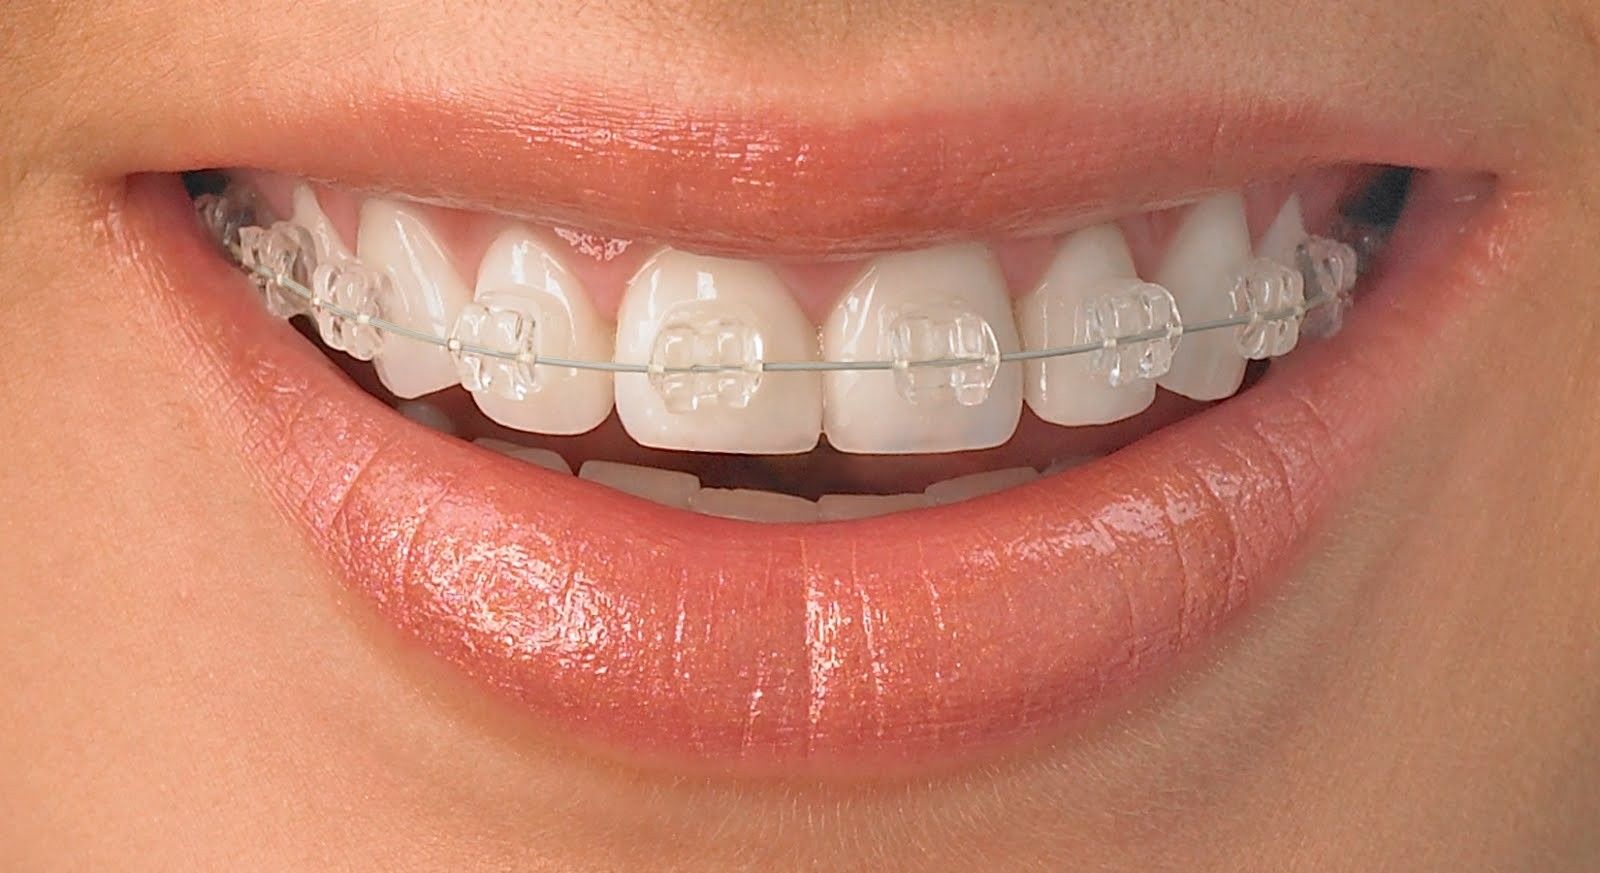 Colocação de Aparelhos Dentais Móveis em Umarizal - Aparelho Dentário Damon System